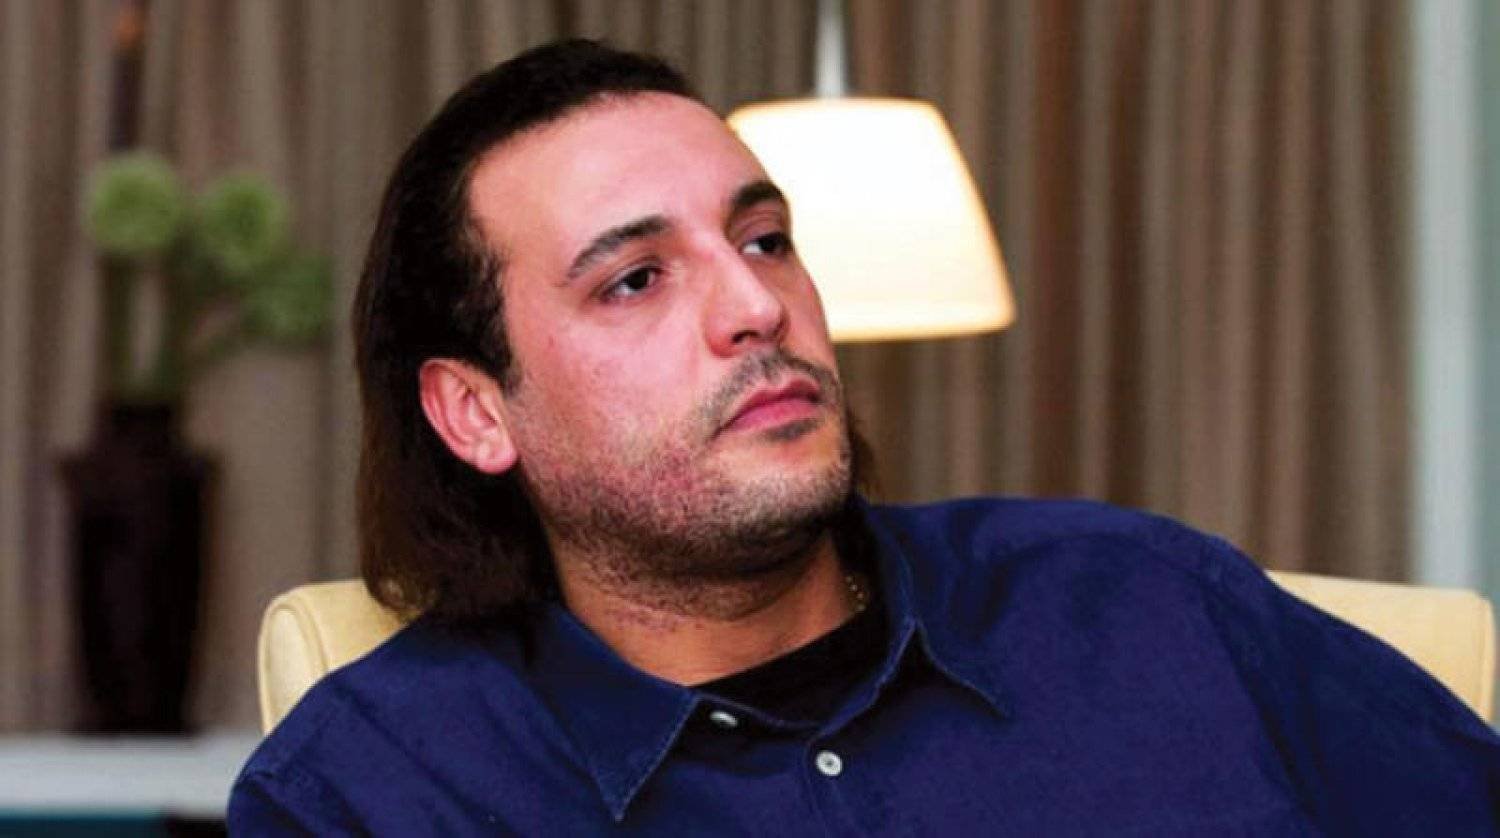 غضب ليبي واسع بعد حديث عن سجن هانيبال القذافي «تحت الأرض»